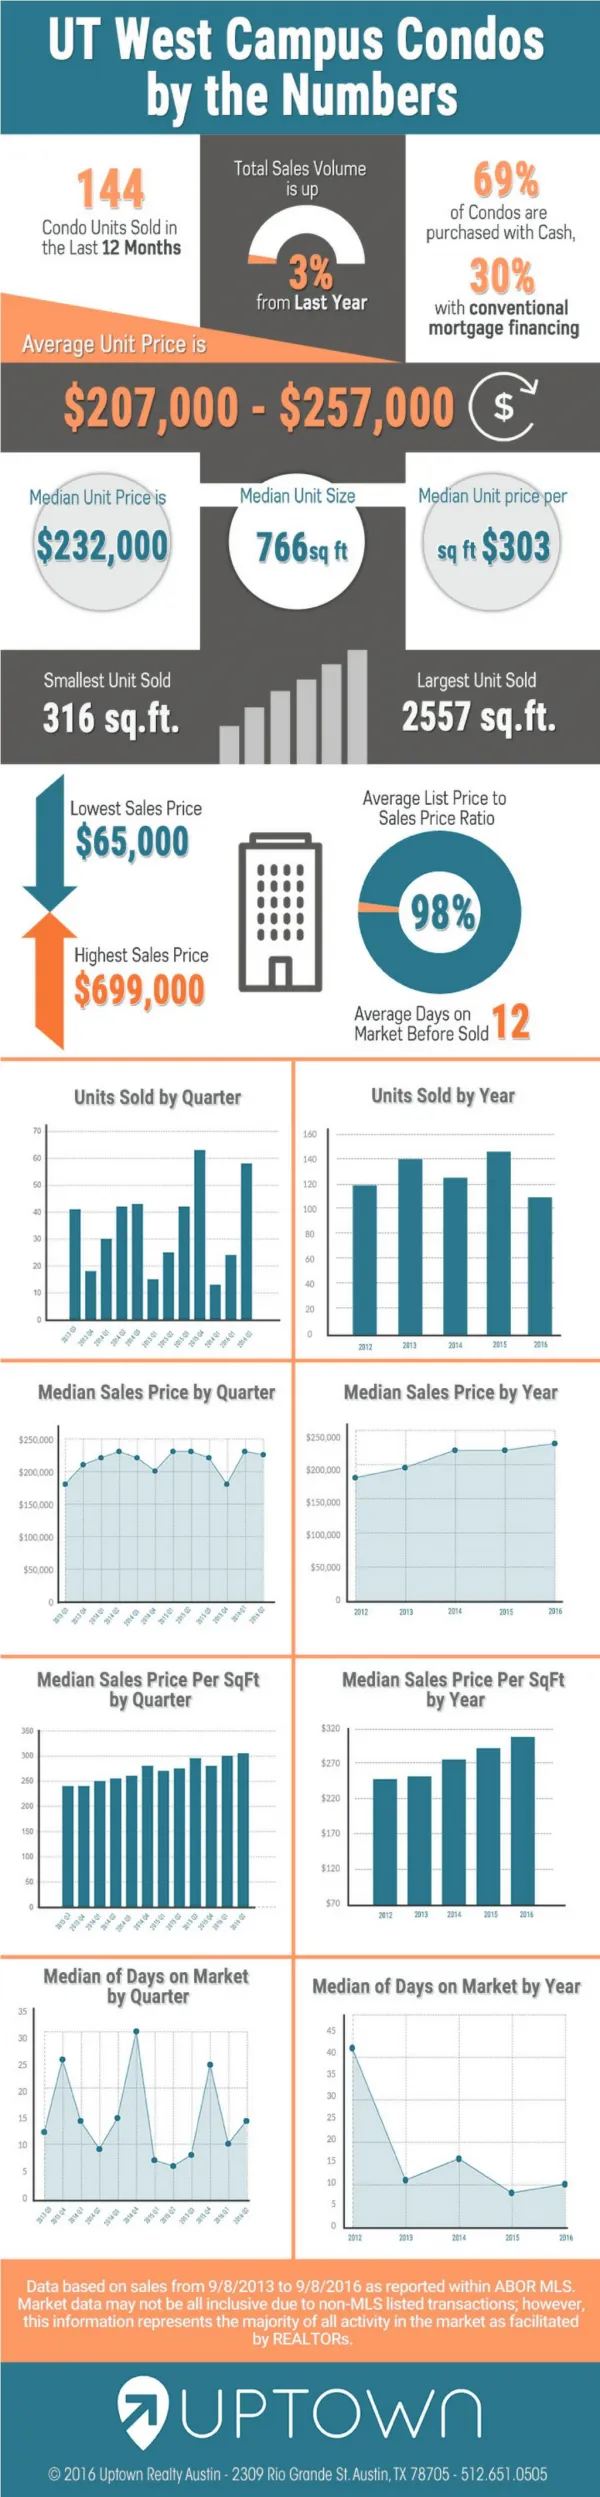 UT West Campus Condo Sales Infographic